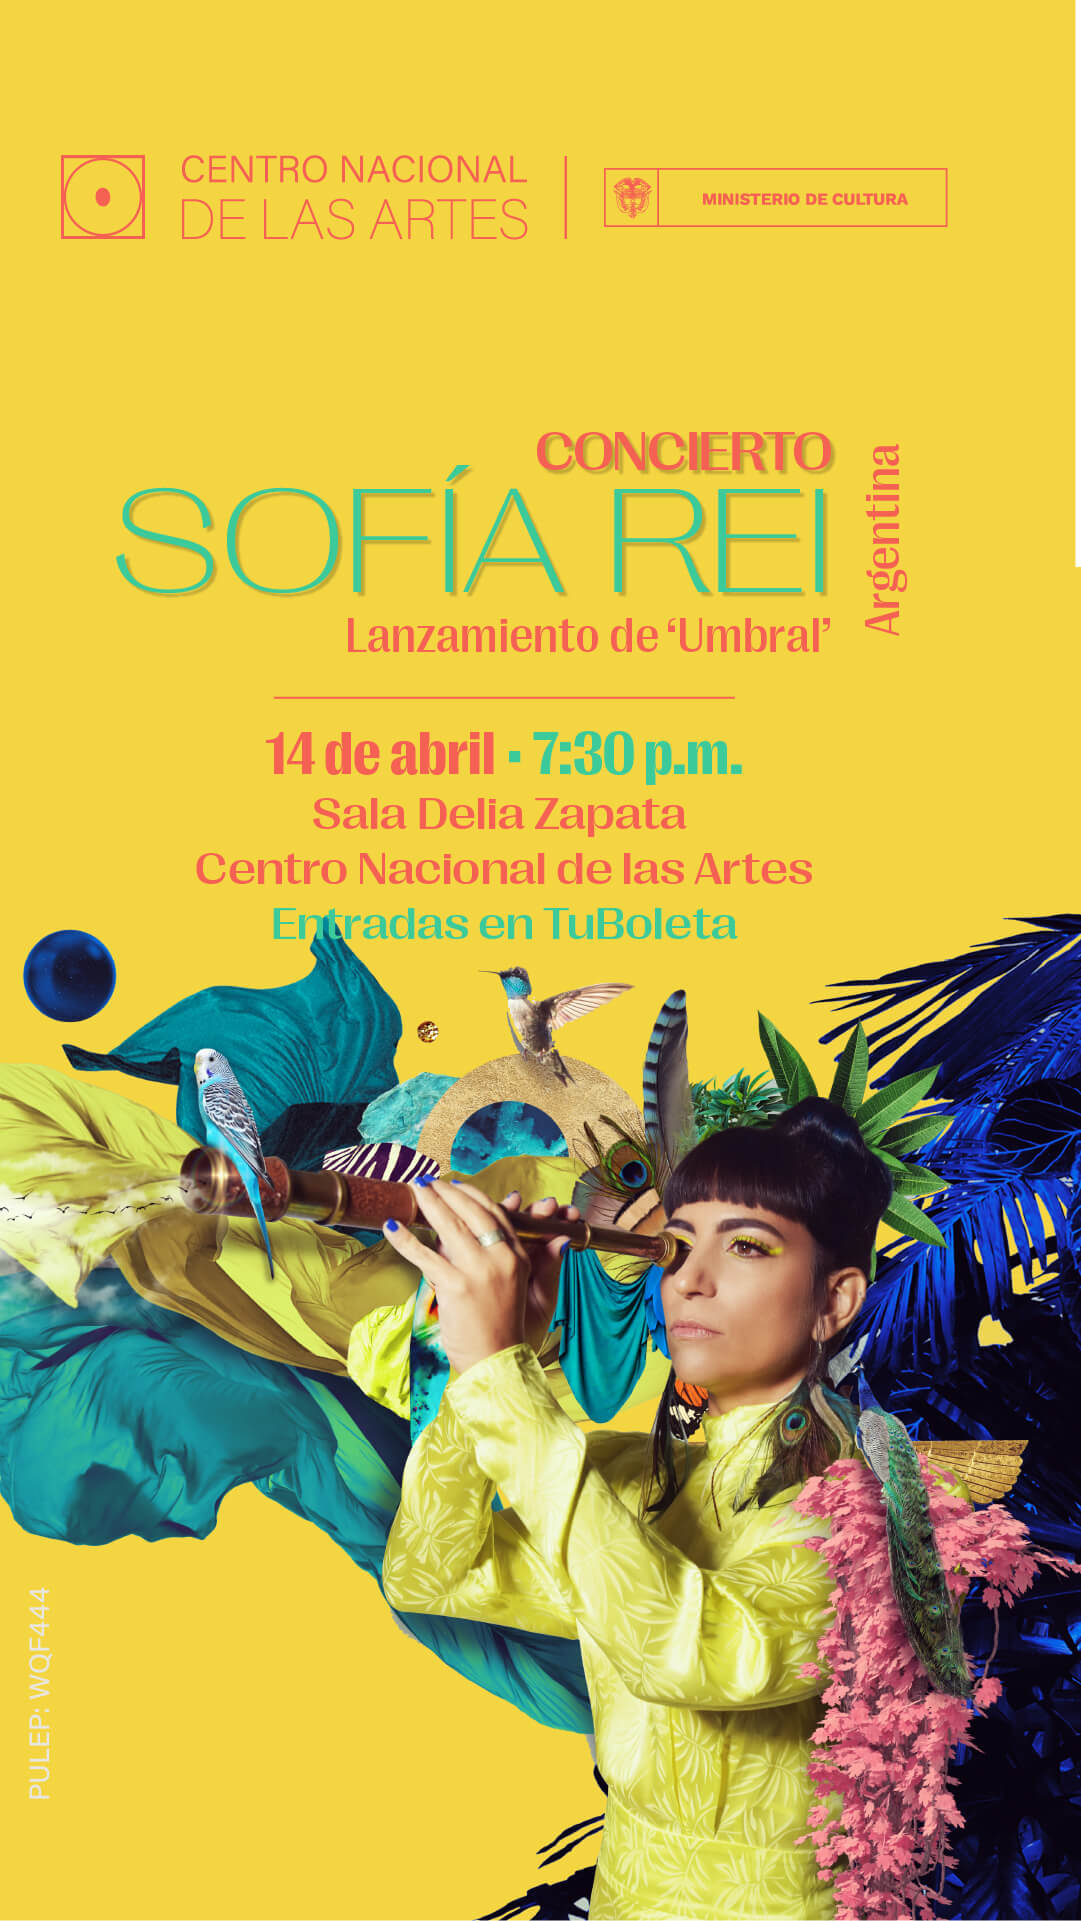 Pieza gráfica invitando a concierto Sofia Rei Lanzamiento disco Umbral